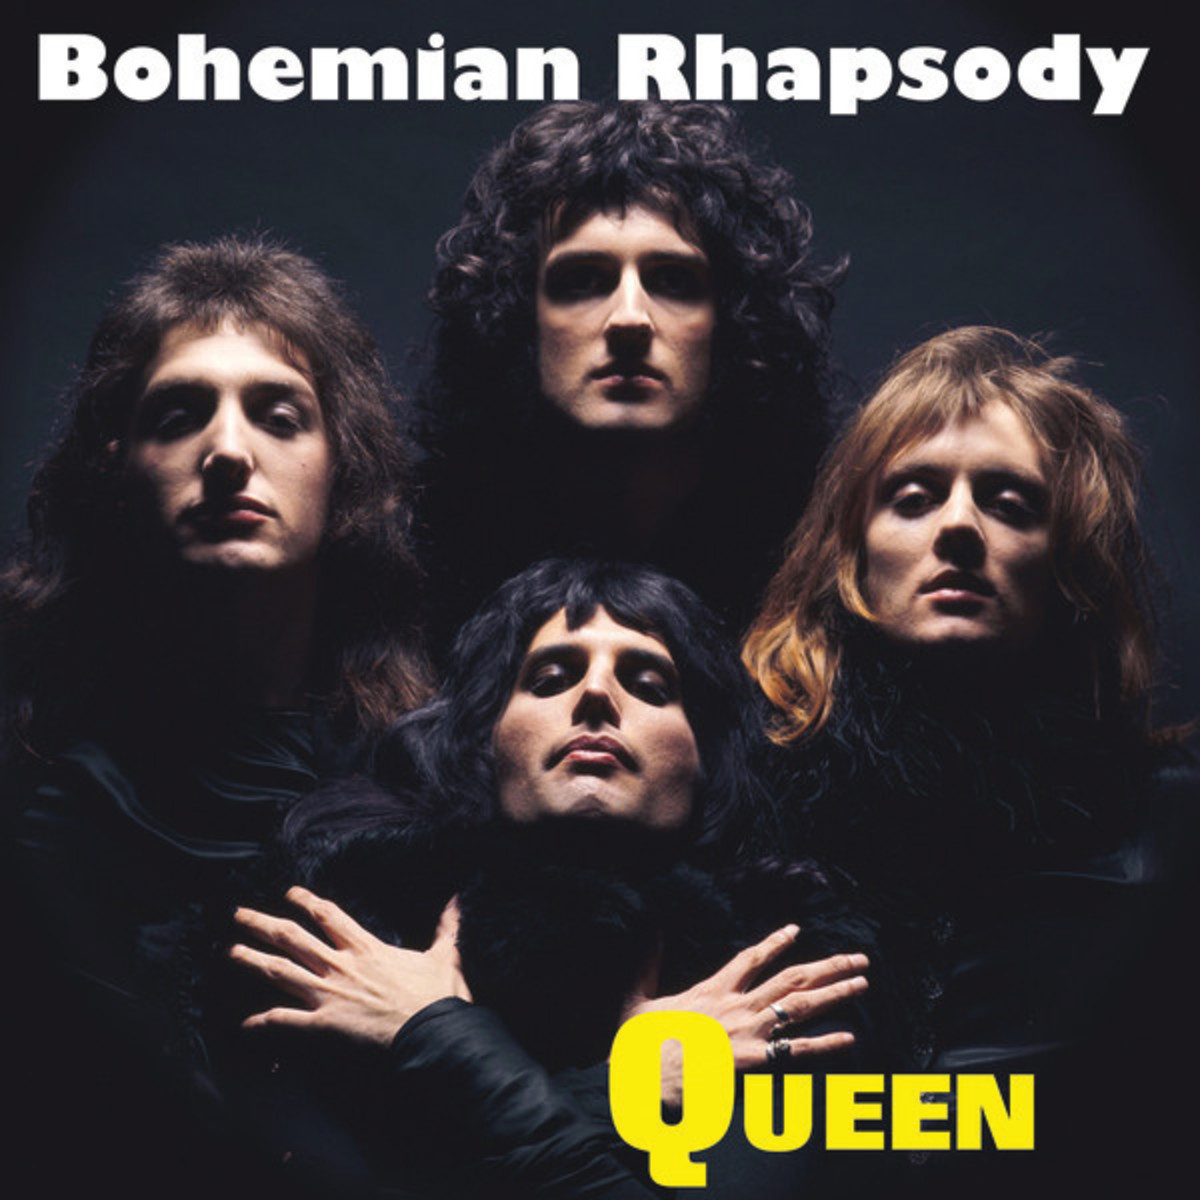 Queen, "Bohemian Rhapsody"